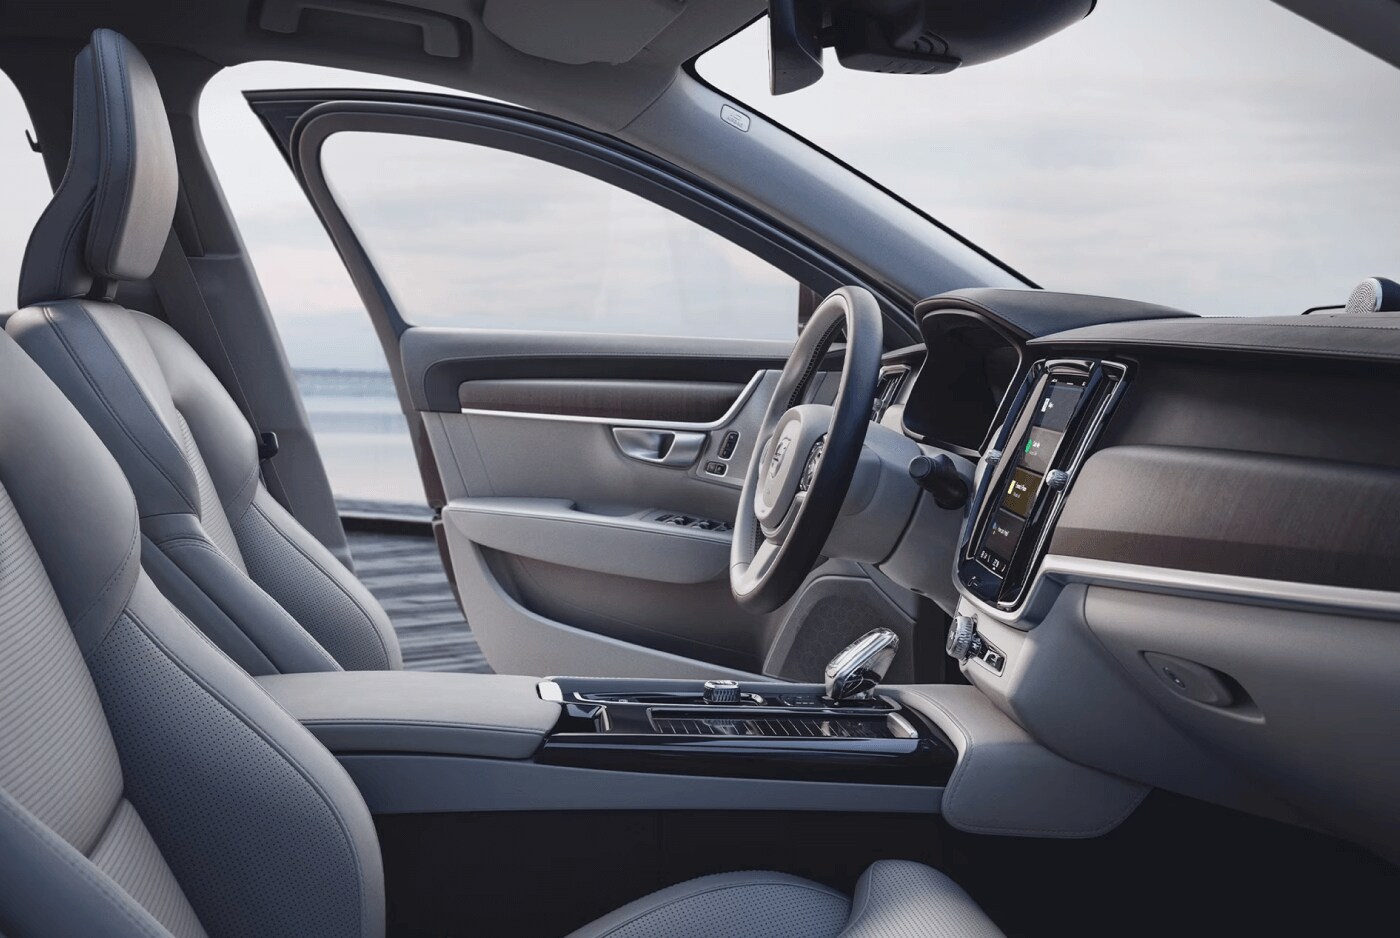 Volvo XC40 interior design